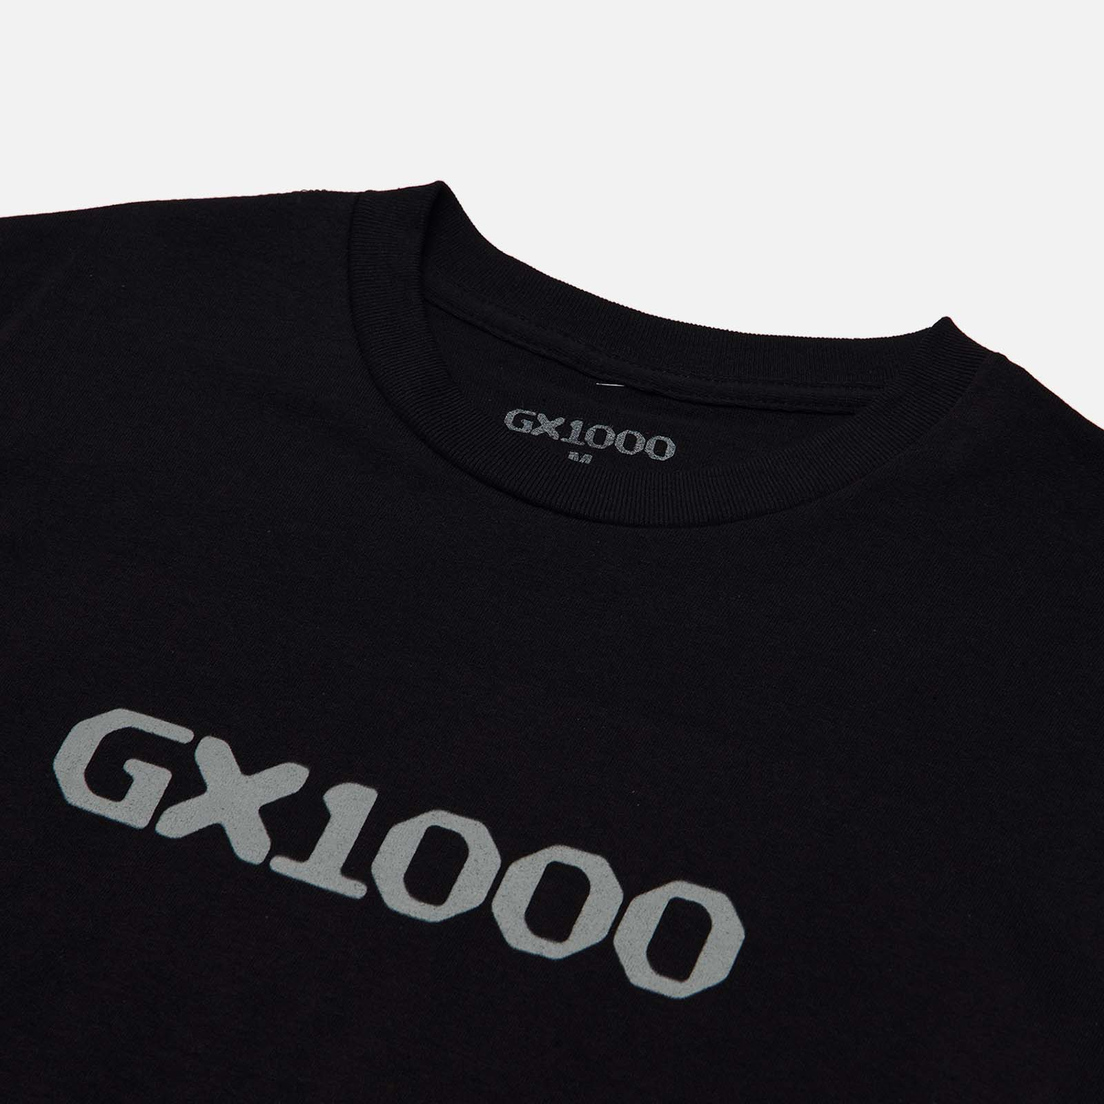 GX1000 Мужская футболка OG Logo